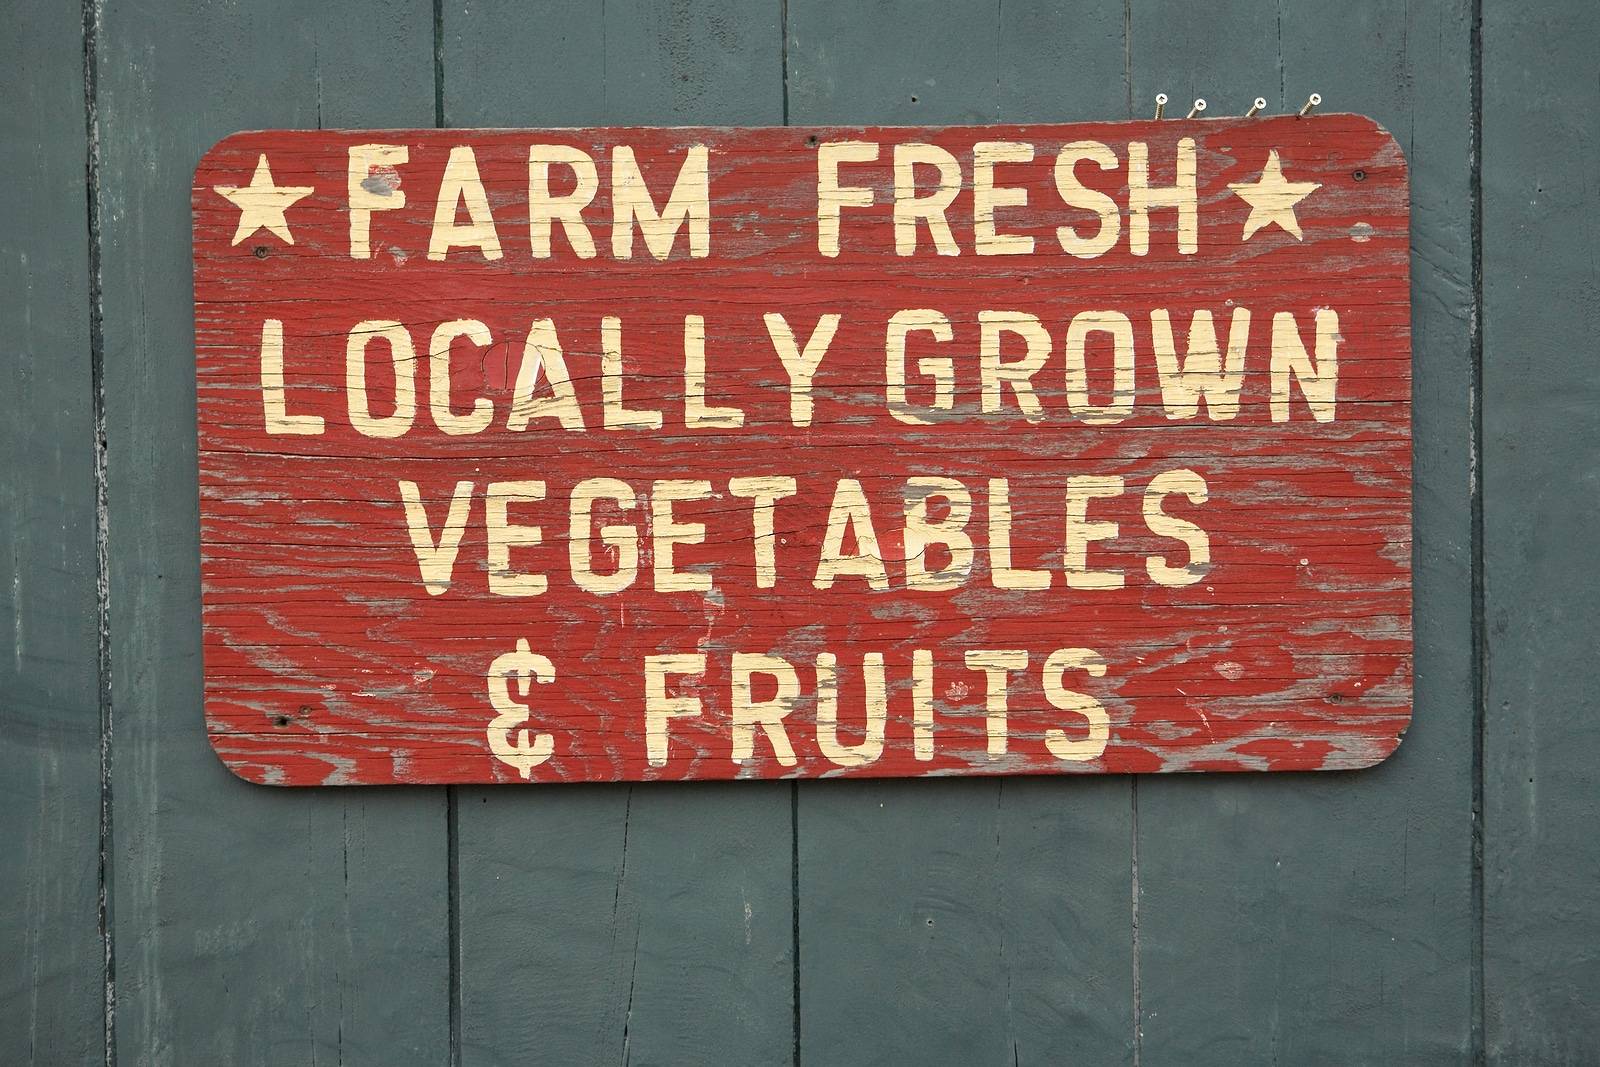 FARM FRESH vegtables and fruits